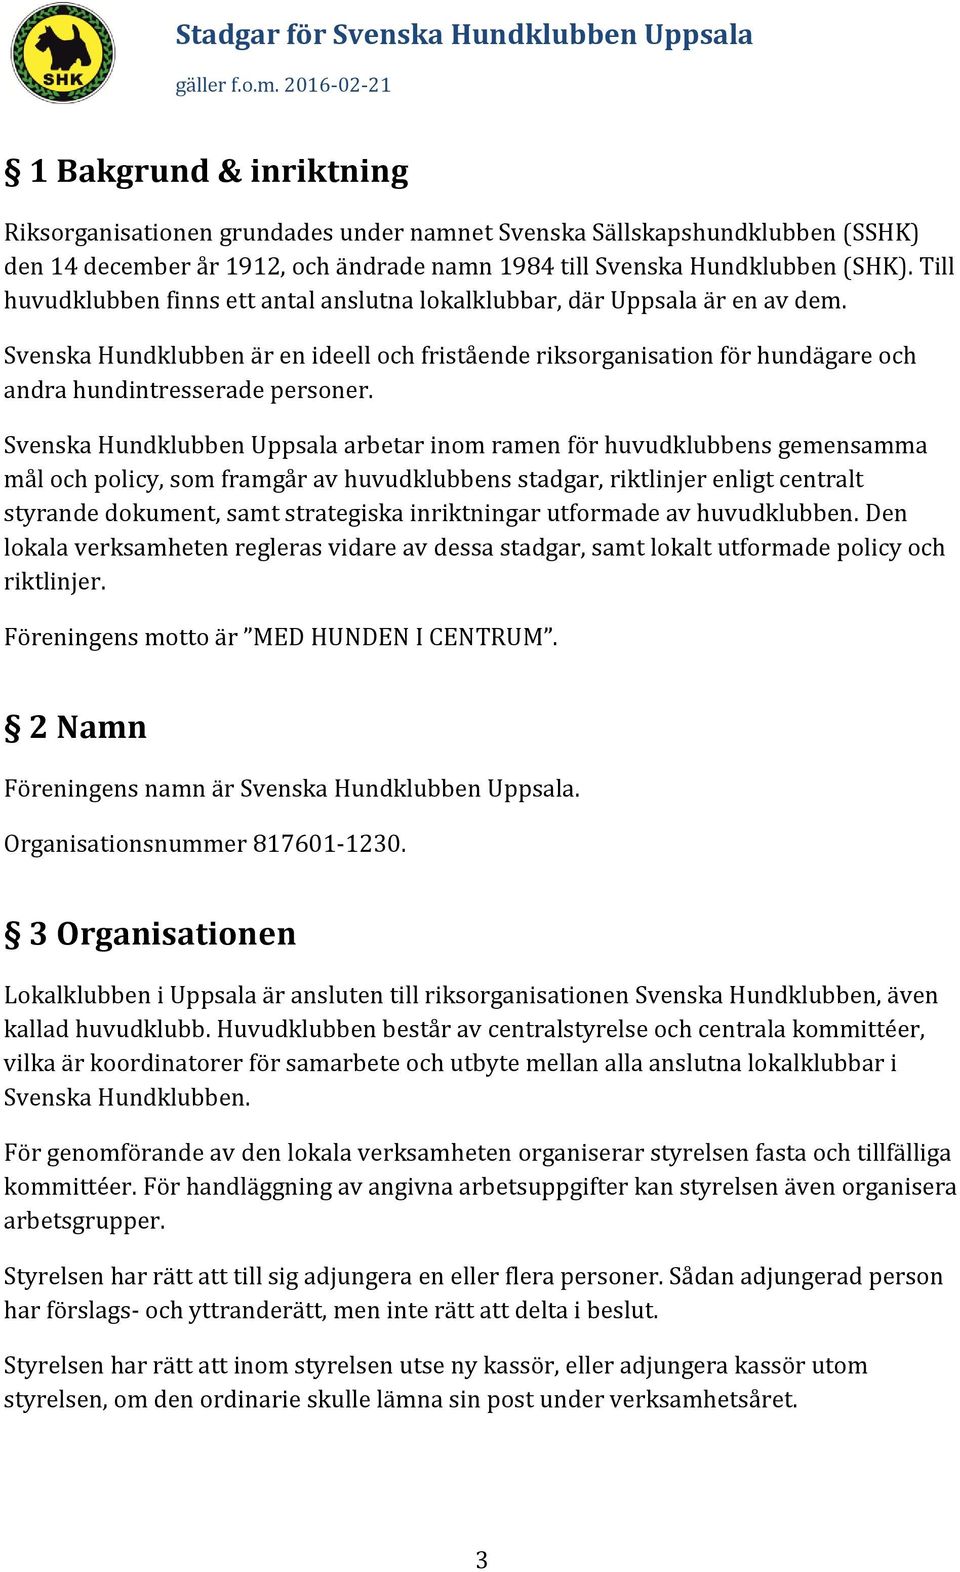 Svenska Hundklubben Uppsala arbetar inom ramen för huvudklubbens gemensamma mål och policy, som framgår av huvudklubbens stadgar, riktlinjer enligt centralt styrande dokument, samt strategiska